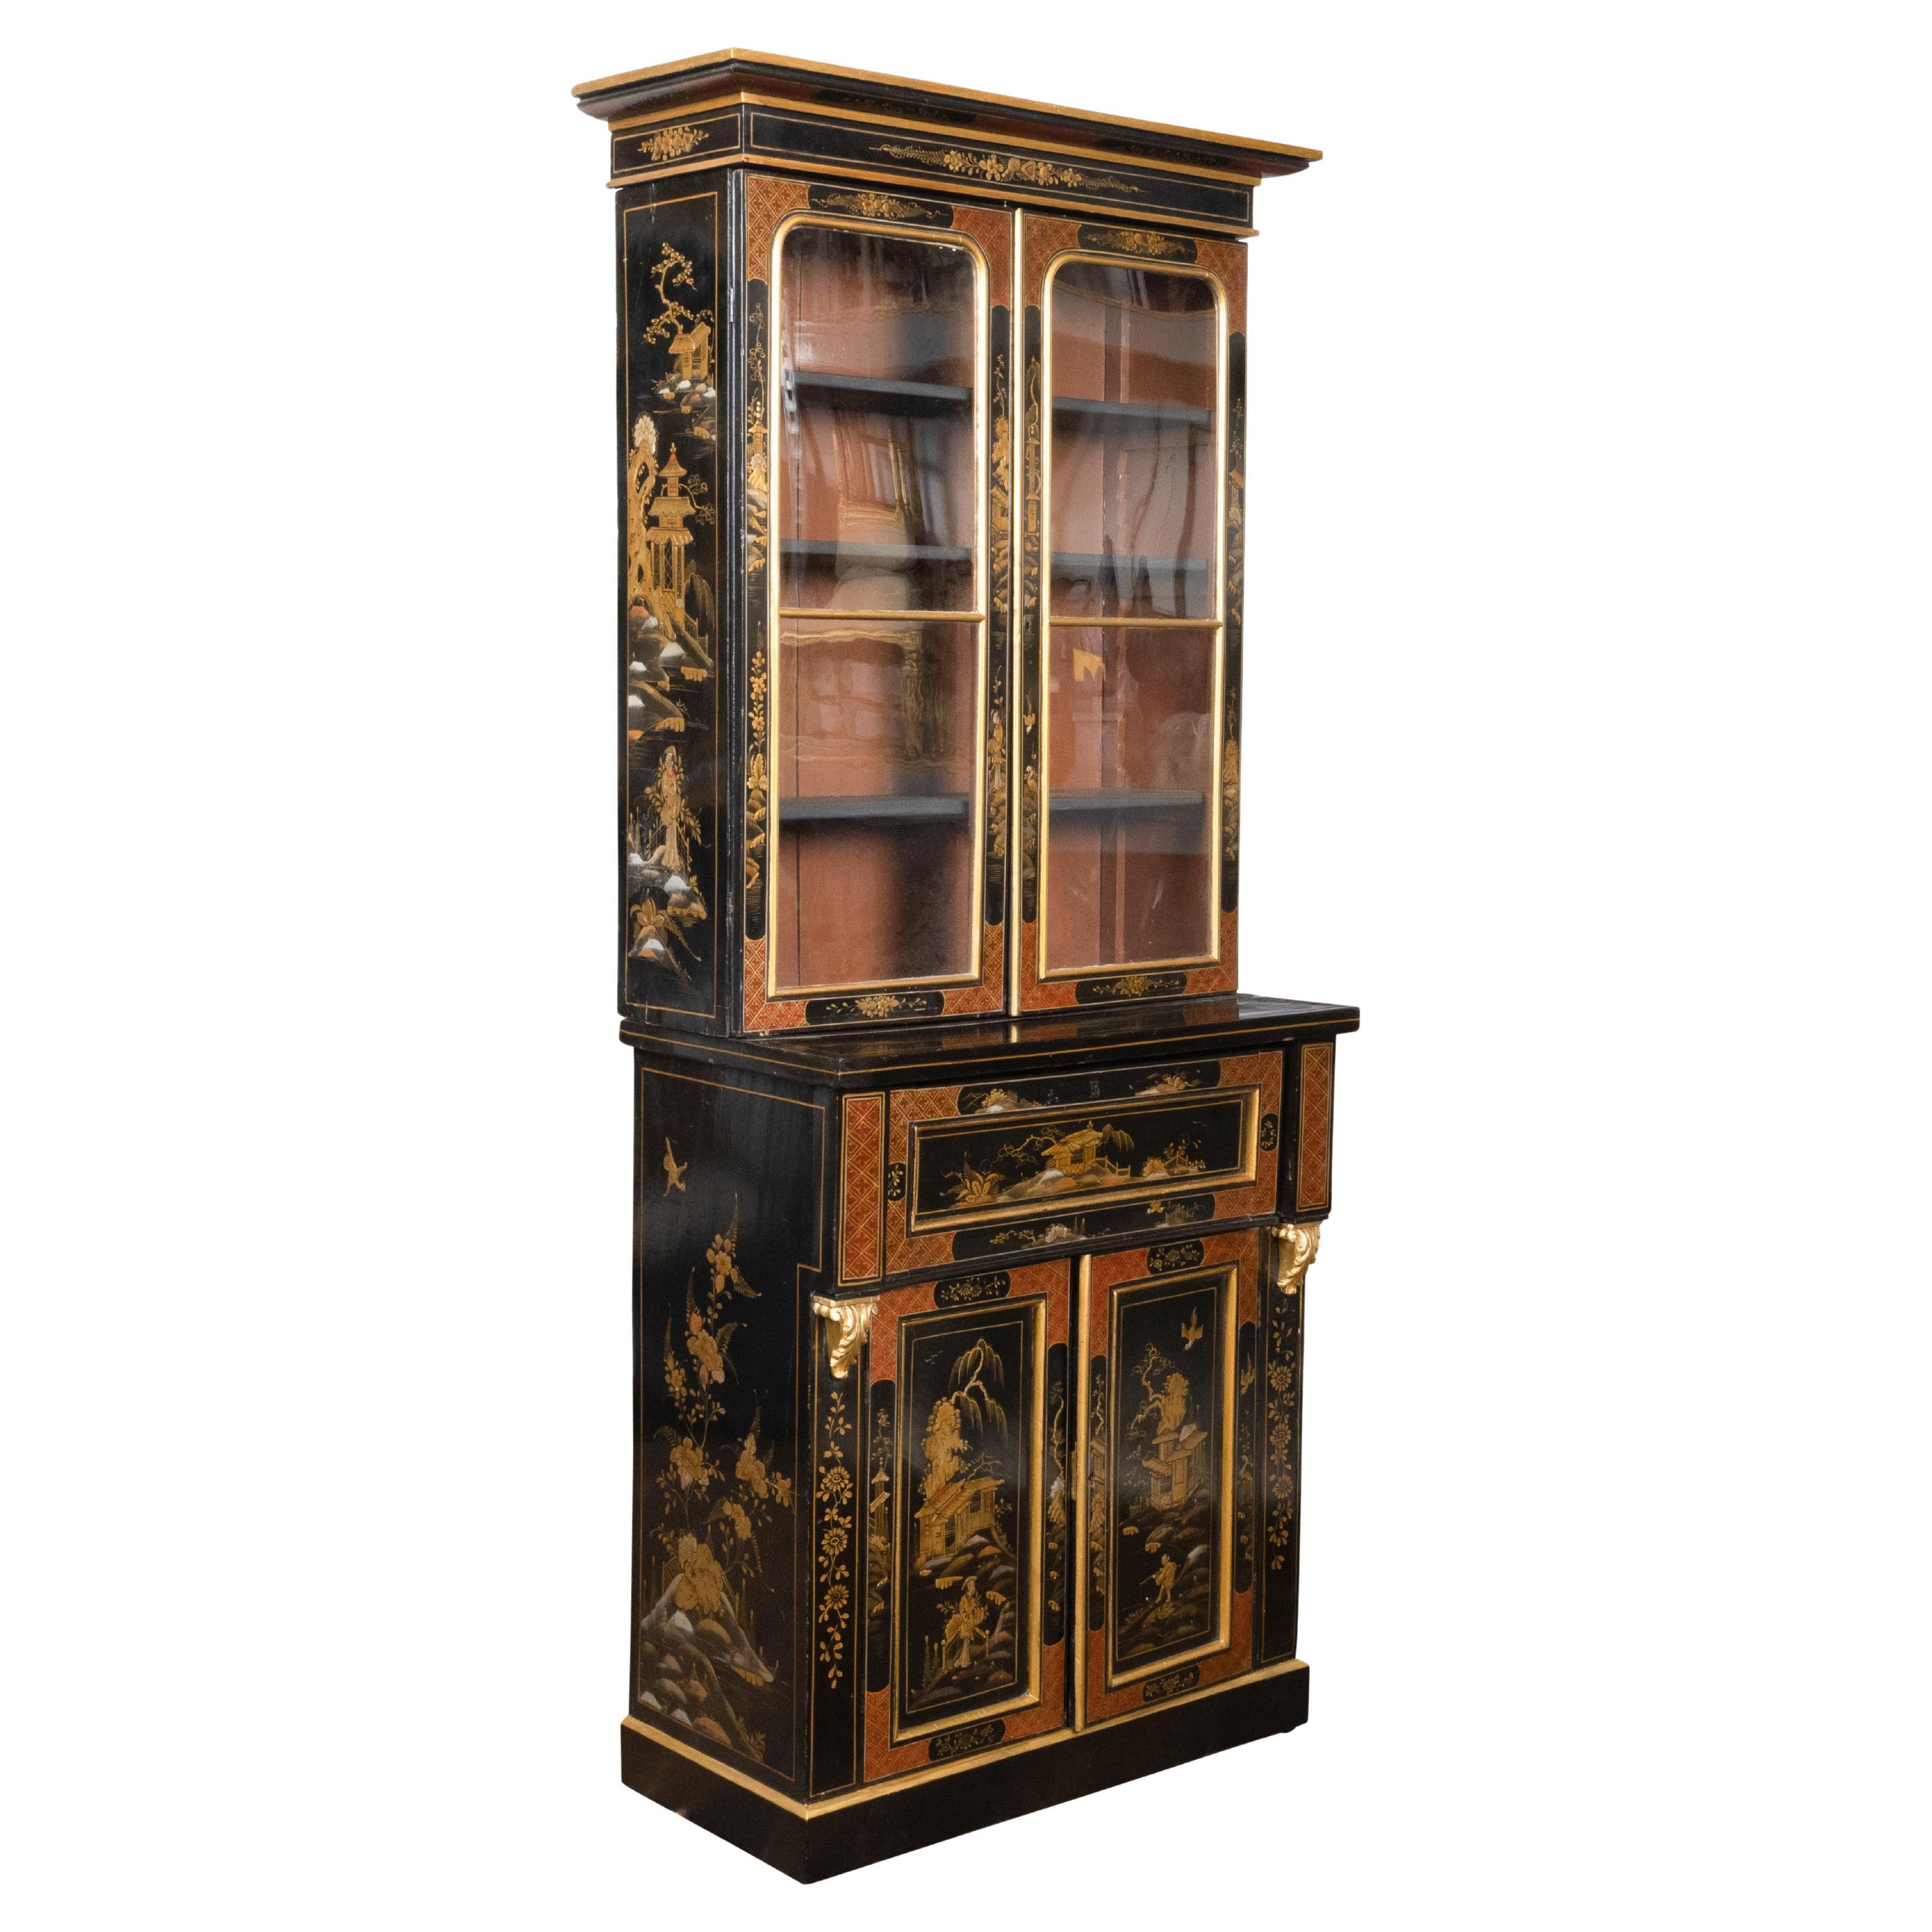 Bibliothèque secrétaire anglaise du 19ème siècle noire et dorée avec décor de chinoiseries